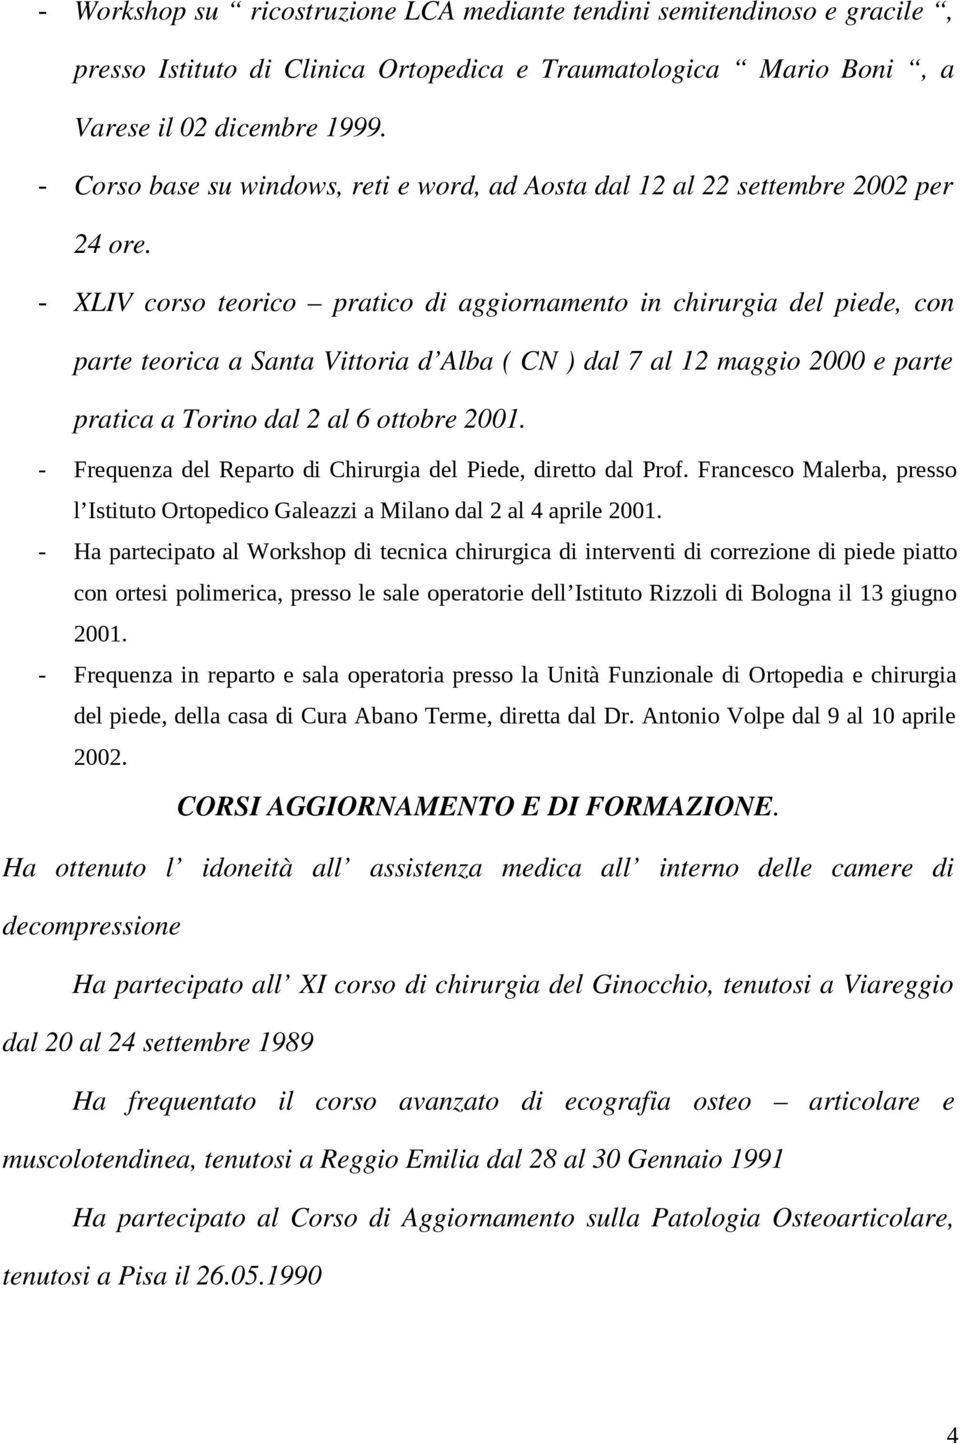 - XLIV corso teorico pratico di aggiornamento in chirurgia del piede, con parte teorica a Santa Vittoria d Alba ( CN ) dal 7 al 12 maggio 2000 e parte pratica a Torino dal 2 al 6 ottobre 2001.